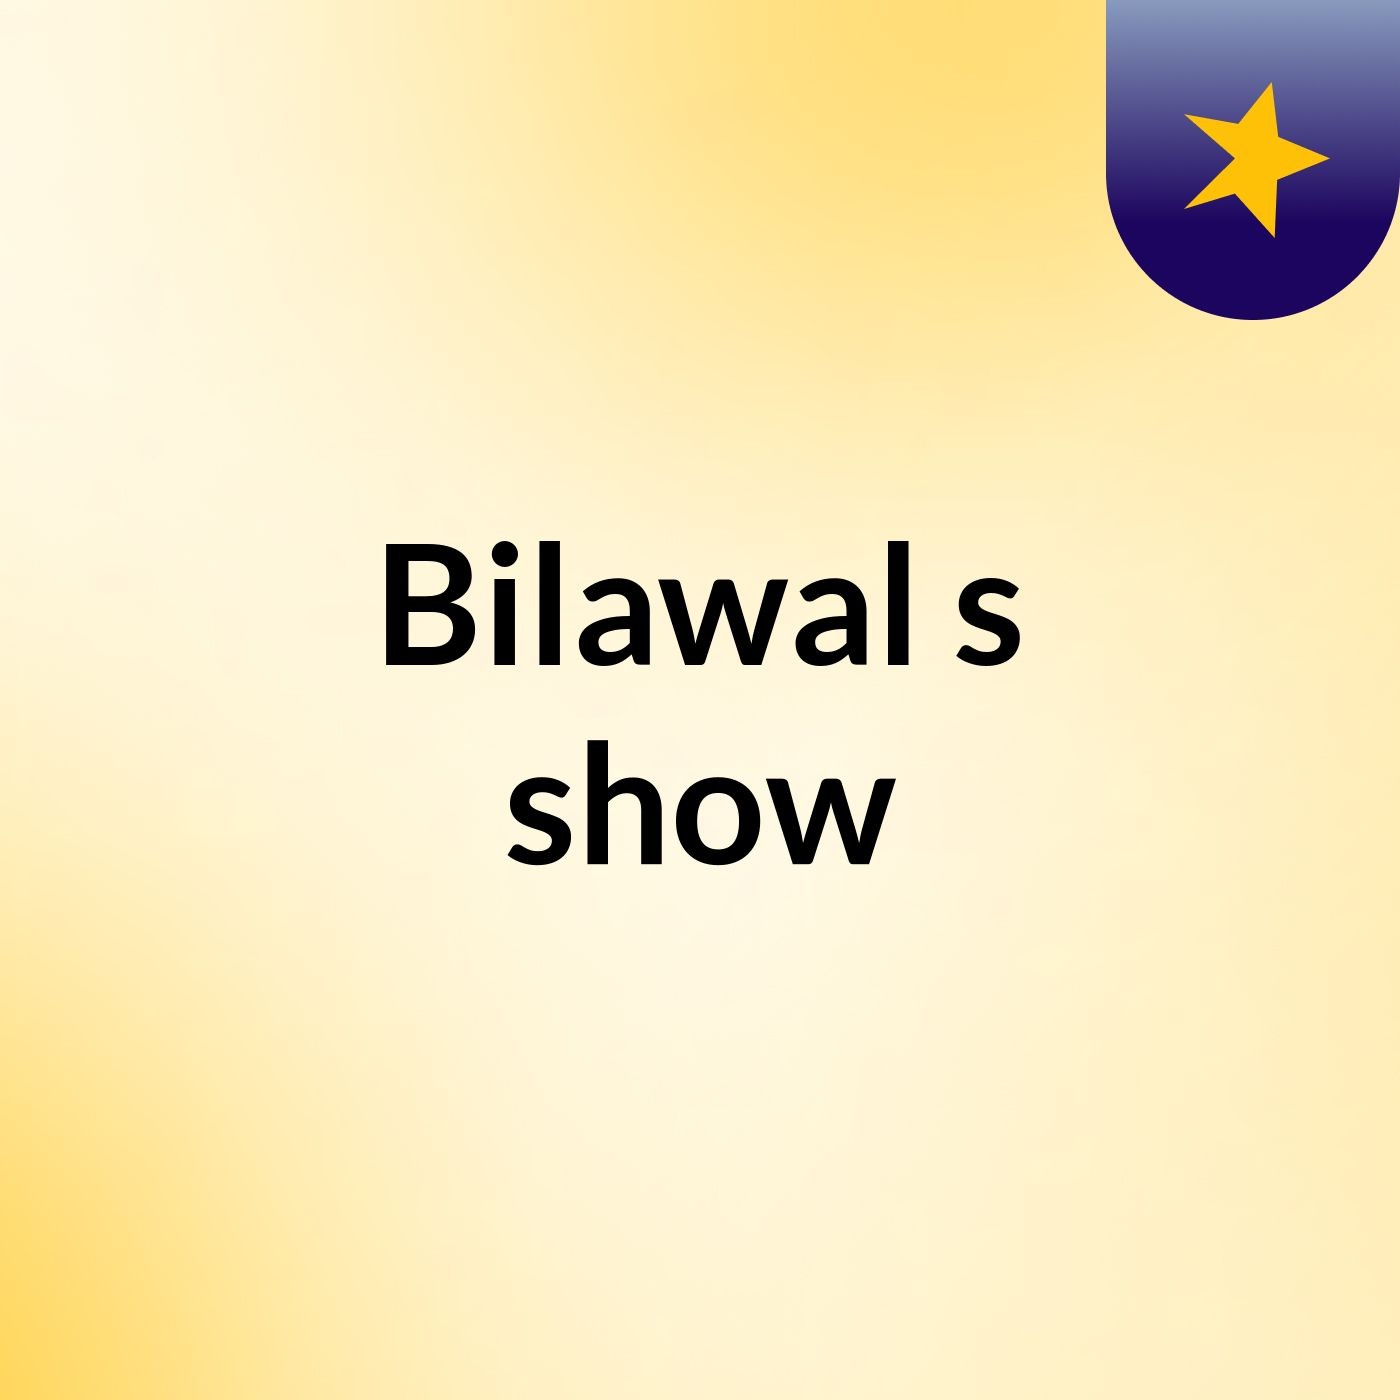 Bilawal's show